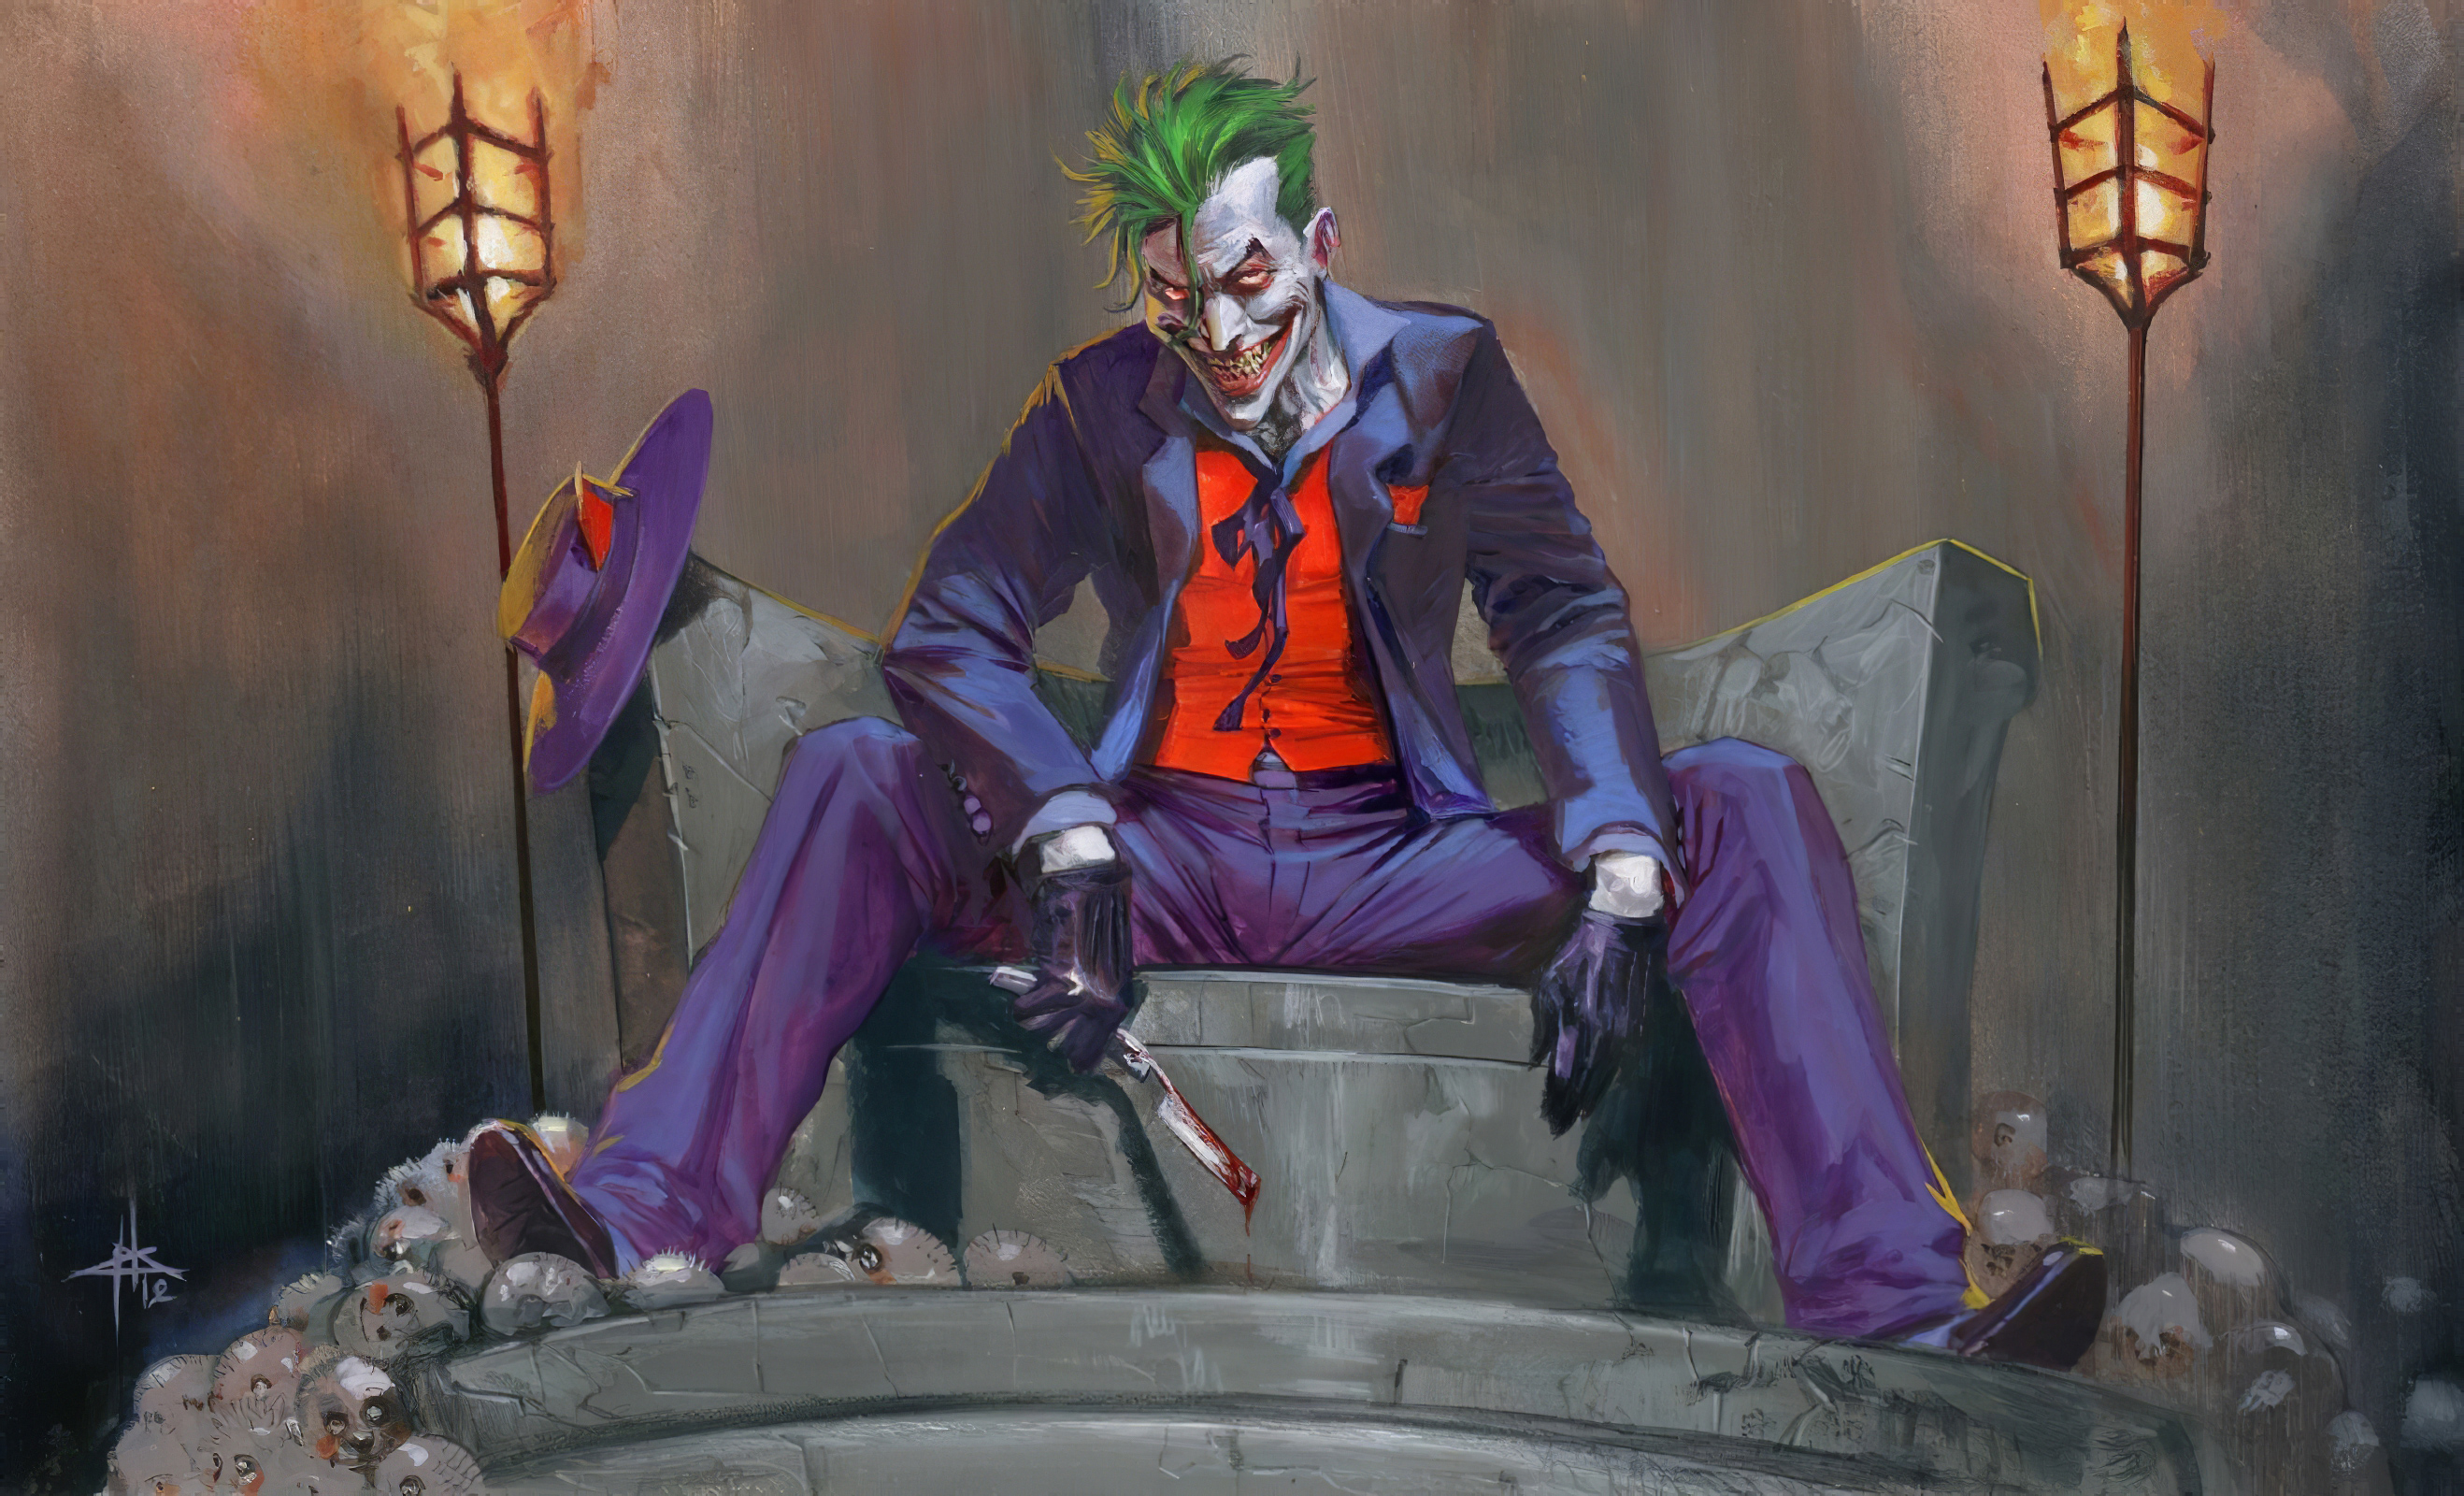 DC Comic Joker Art Wallpaper, HD Artist 4K Wallpapers, Images, Photos and  Background - Wallpapers Den